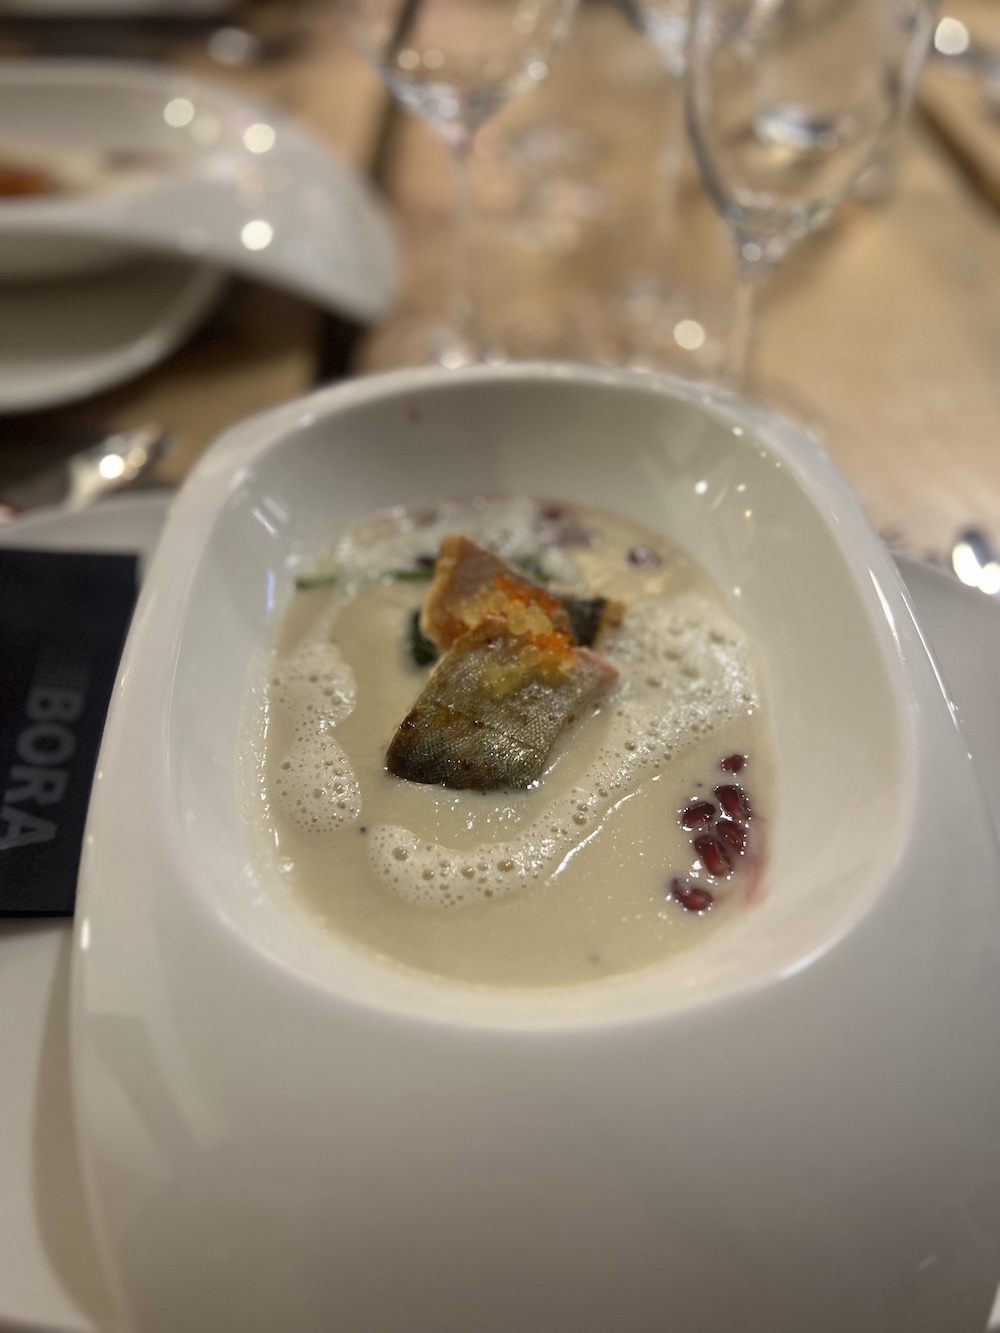 Schön angerichtetes Fischgericht in modernen weißen, tiefen Tellern